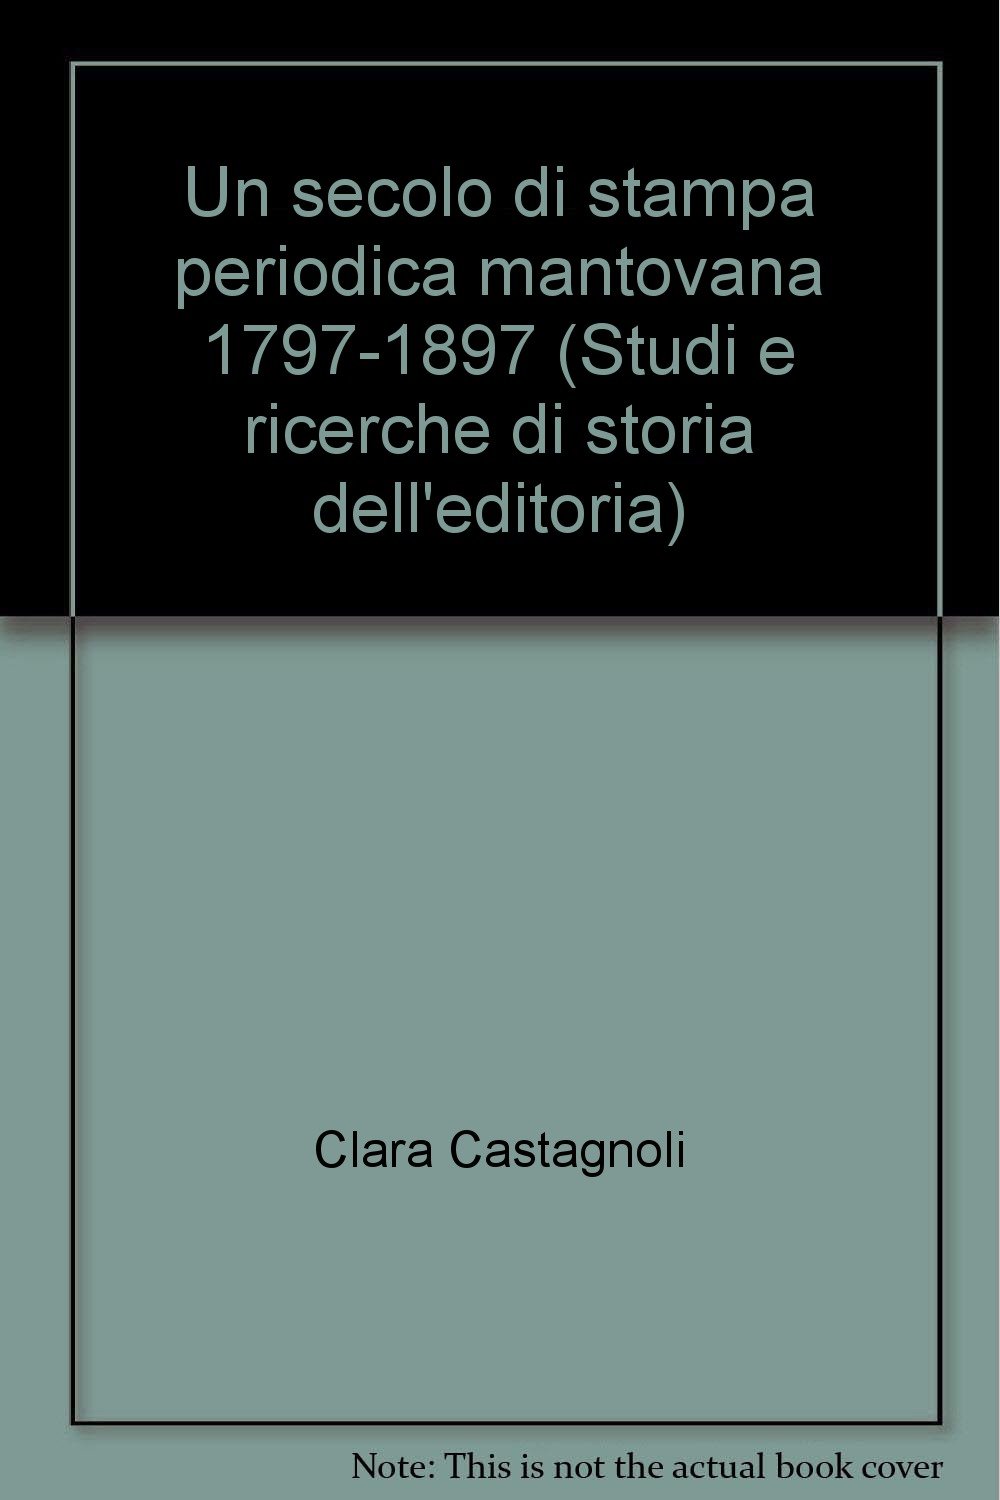 Libri Secolo Di Stampa Periodica Mantovana 1797-1897 (Un) NUOVO SIGILLATO, EDIZIONE DEL 19/04/2002 SUBITO DISPONIBILE